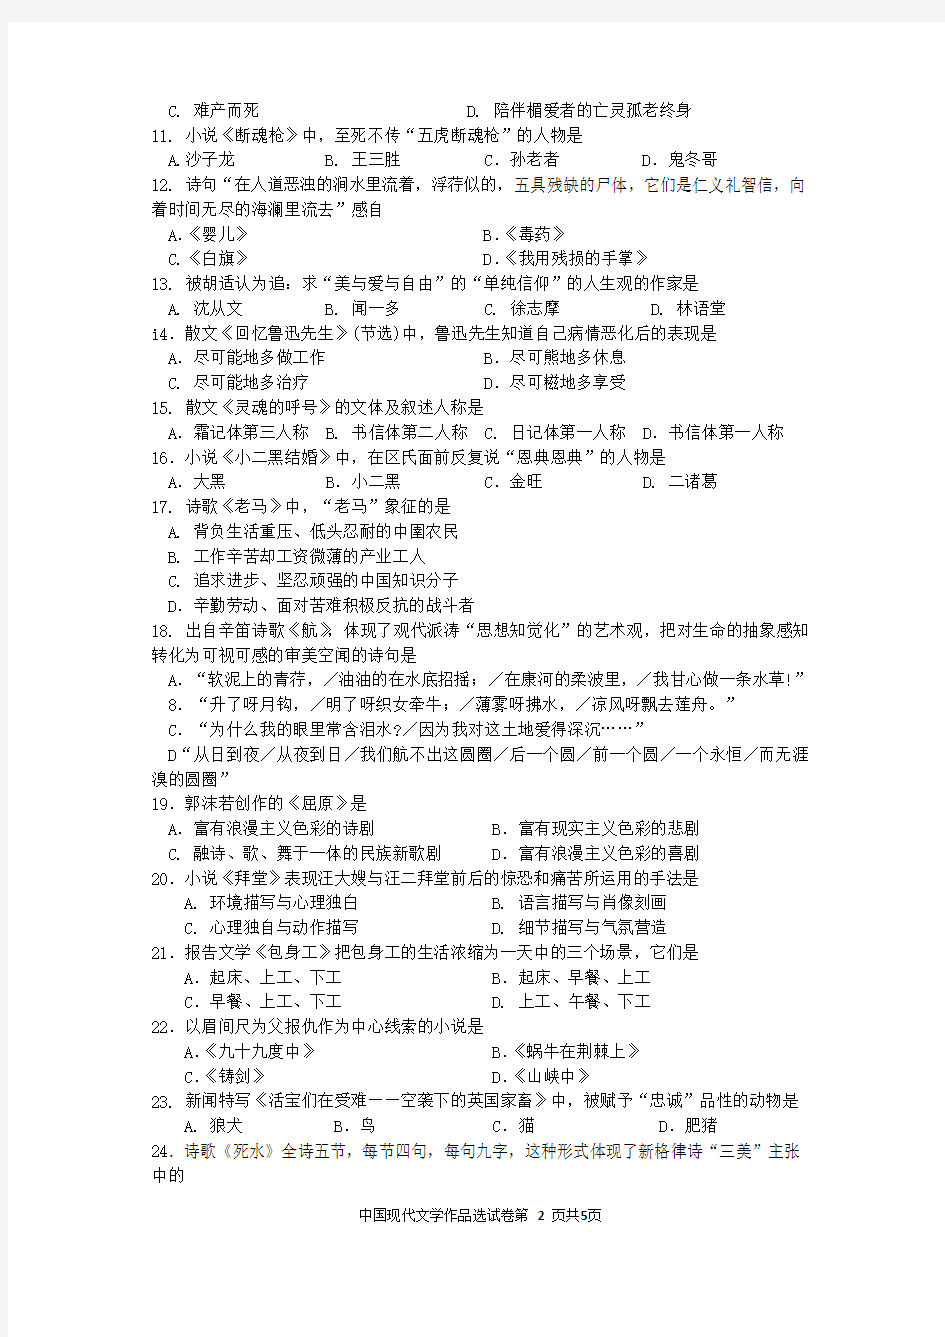 自考中国现代文学作品选(00530)试题及答案解析与评分标准